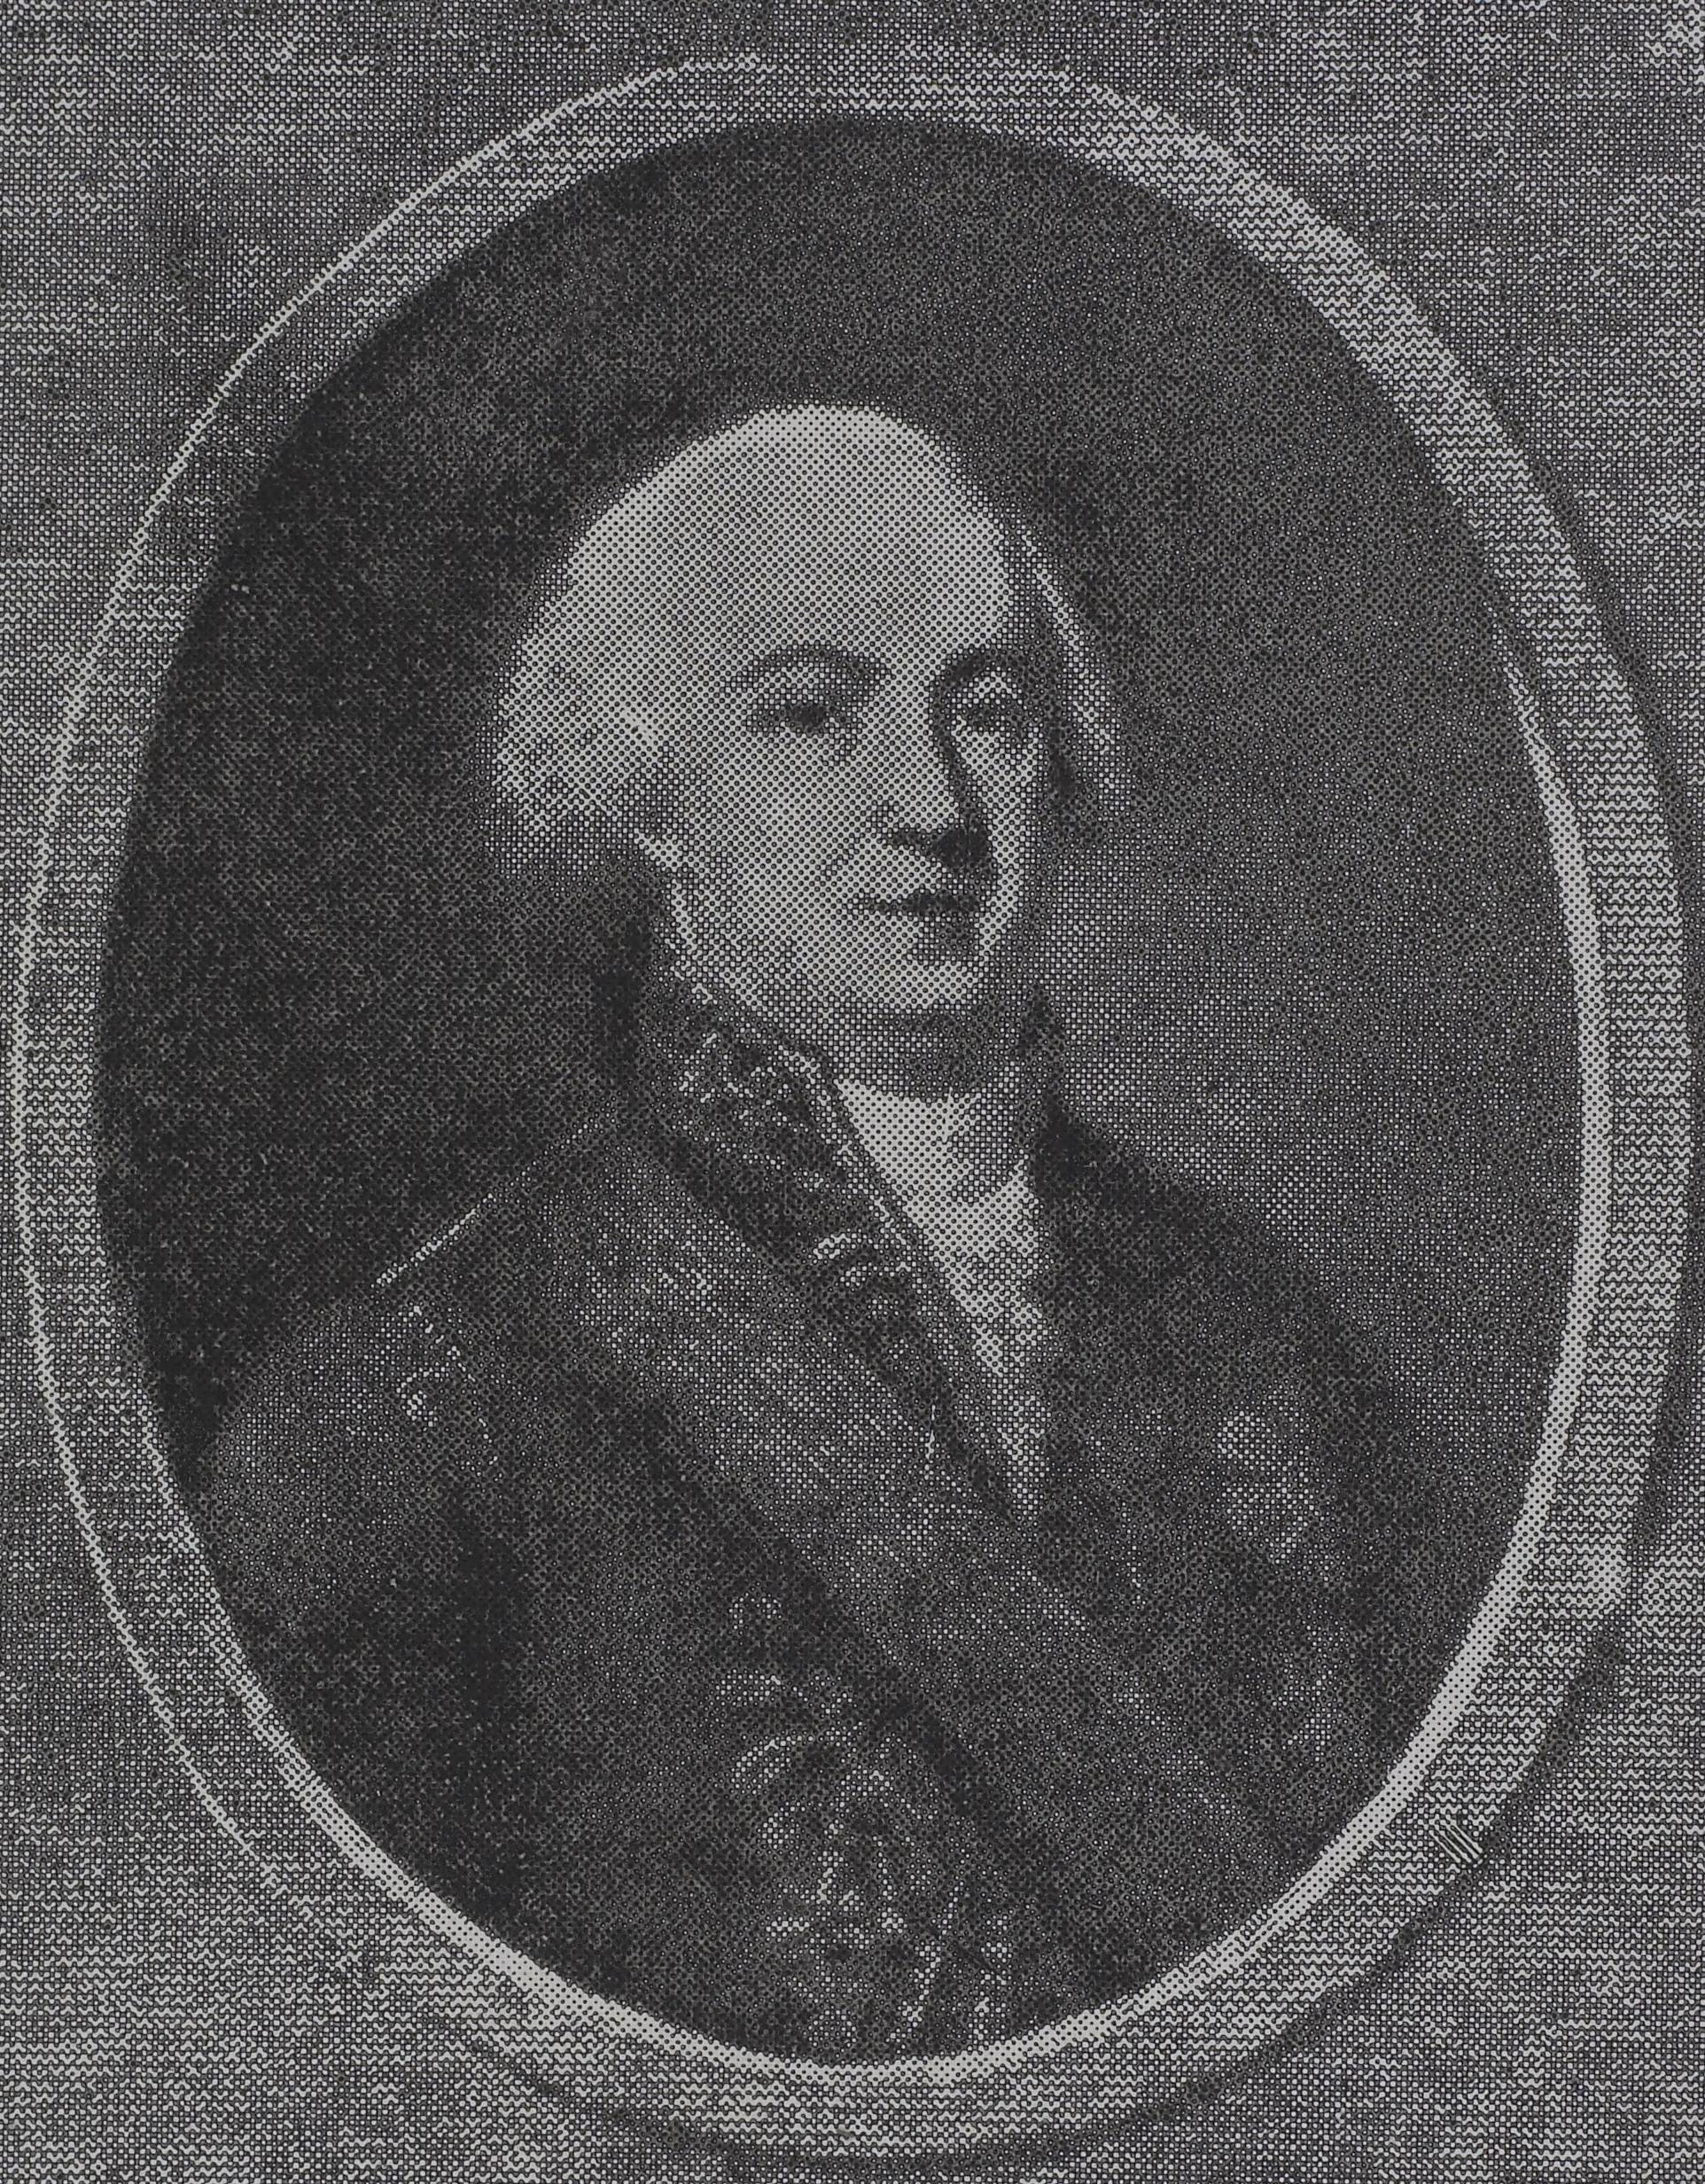 Retrato de d. Rodrigo de Souza Coutinho, conde de Linhares, que ocupou a pasta da Secretaria dos Negócios Estrangeiros e da Guerra de 1808 a 1812